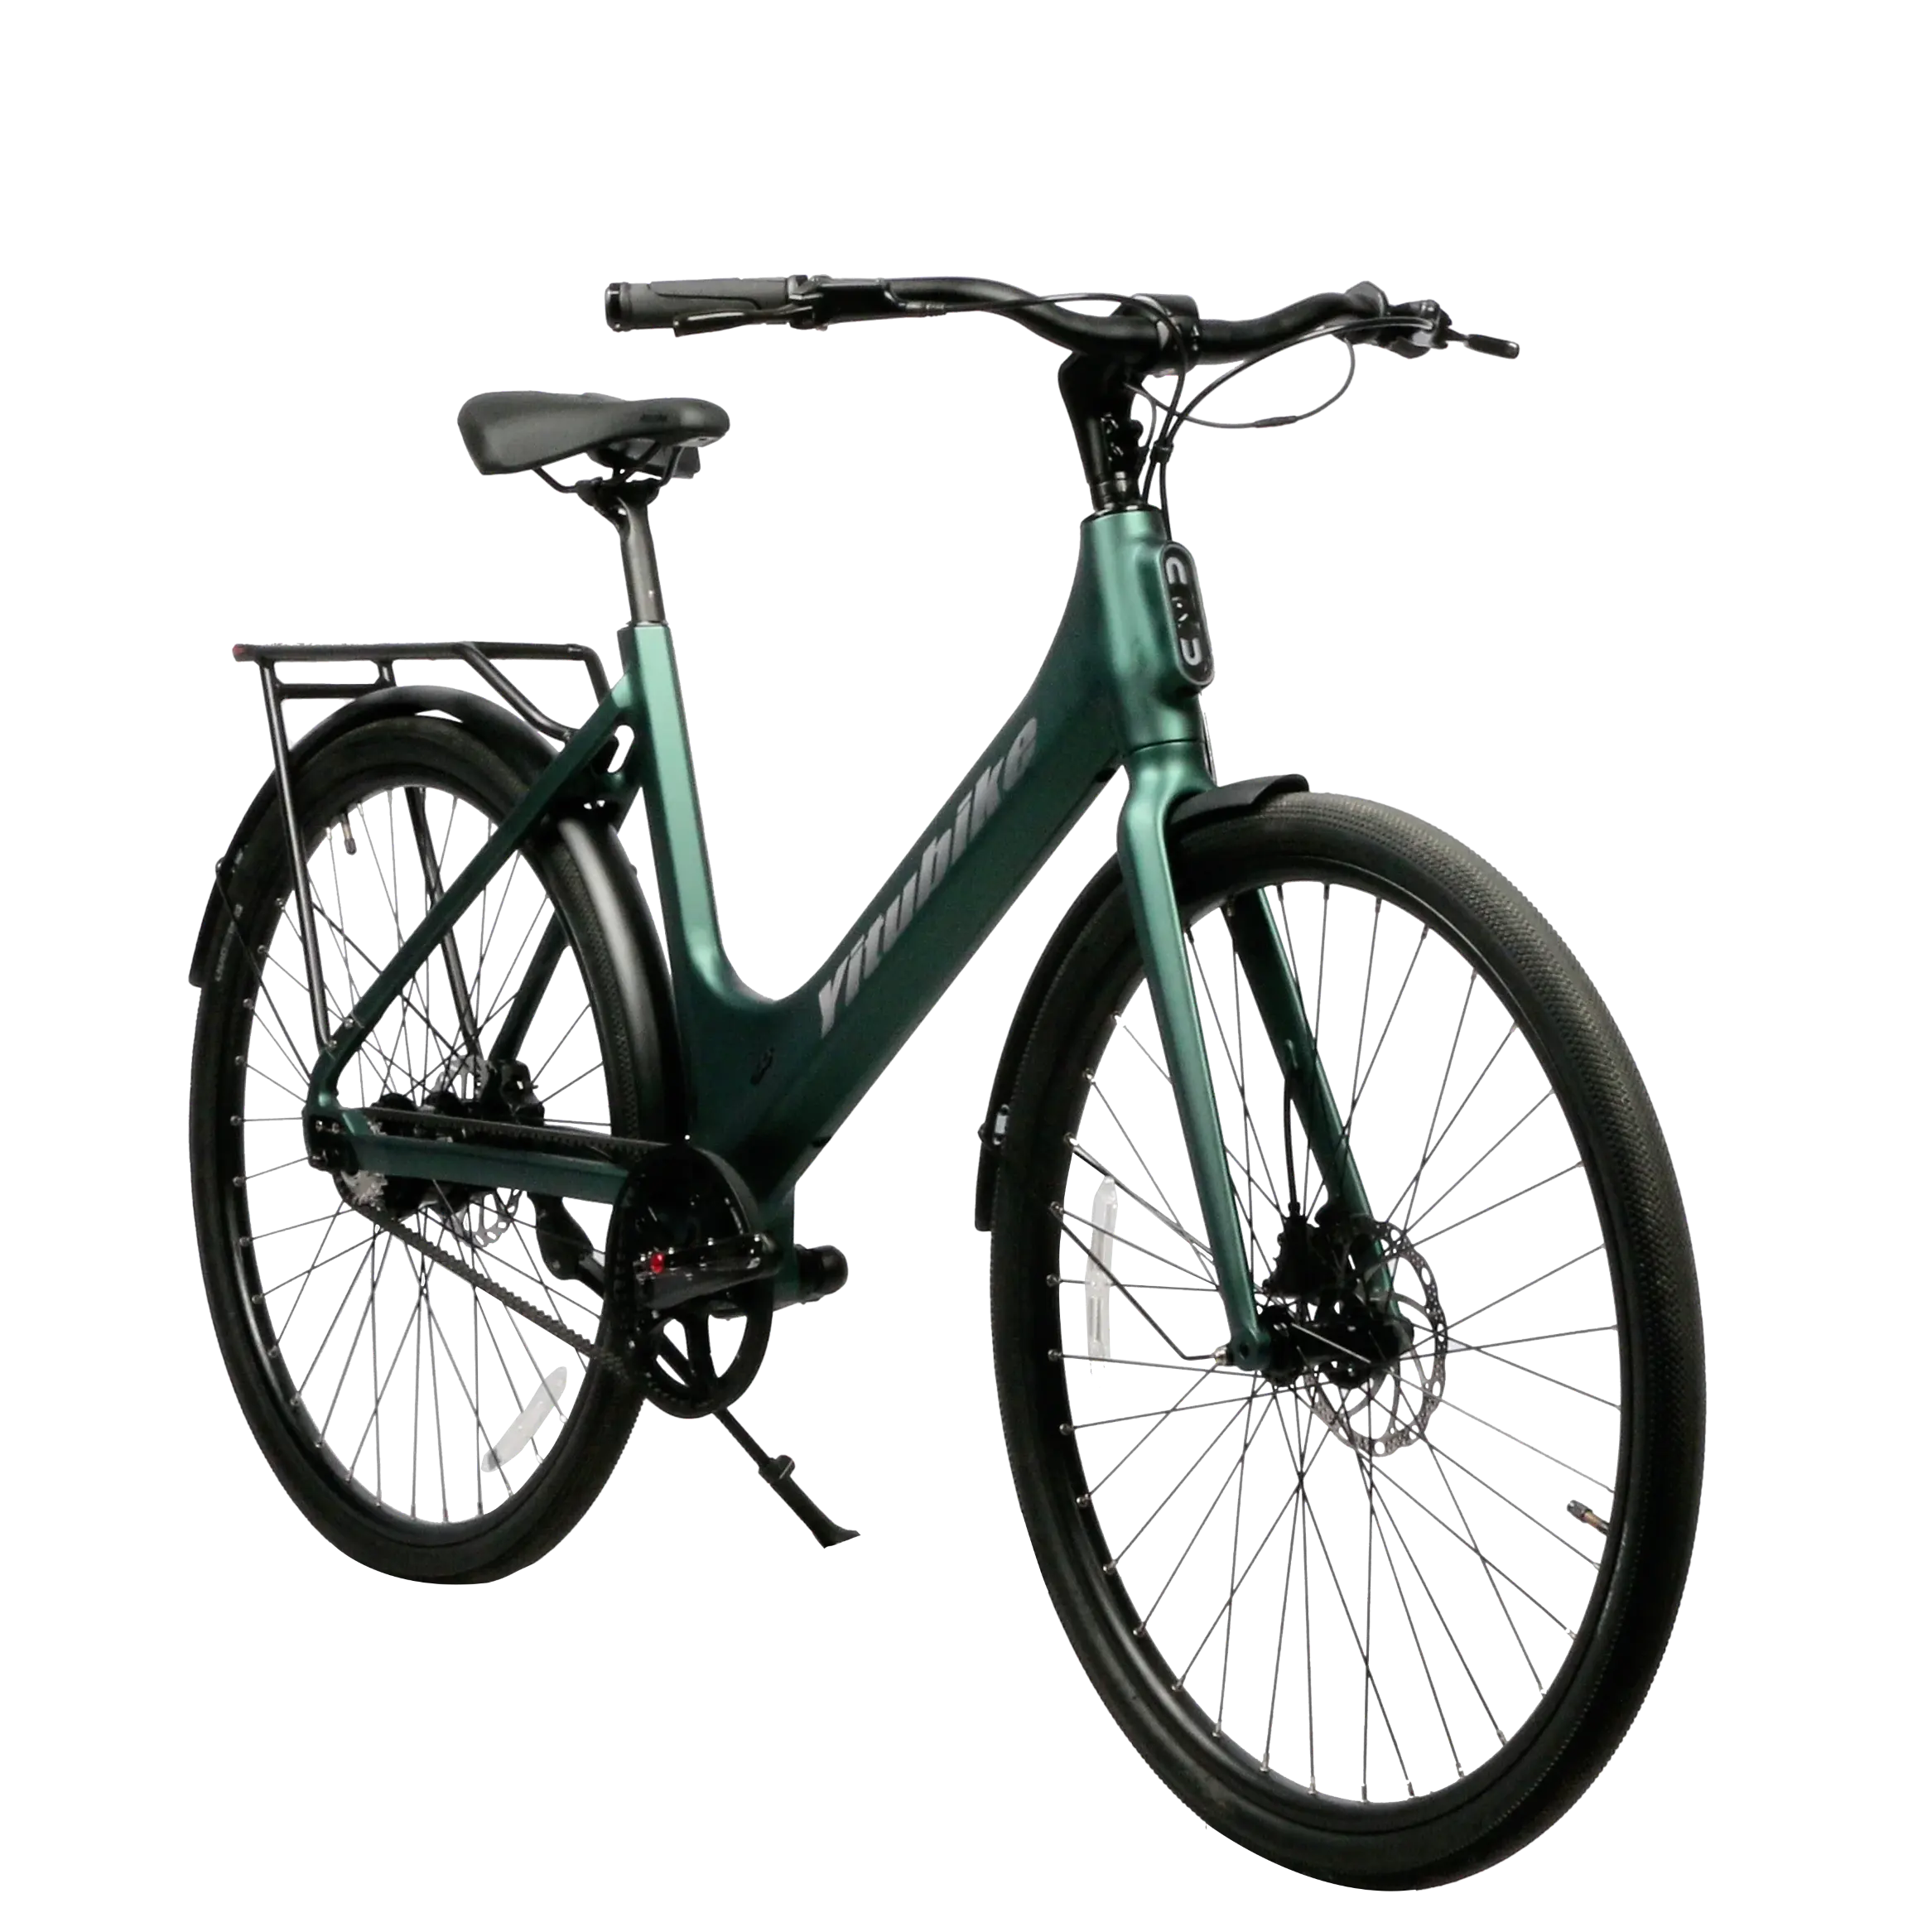 Commercio all'ingrosso della fabbrica di sport bici a buon mercato per gli uomini donne in lega di alluminio telaio OEM 700c bici da corsa bici da strada per adulti